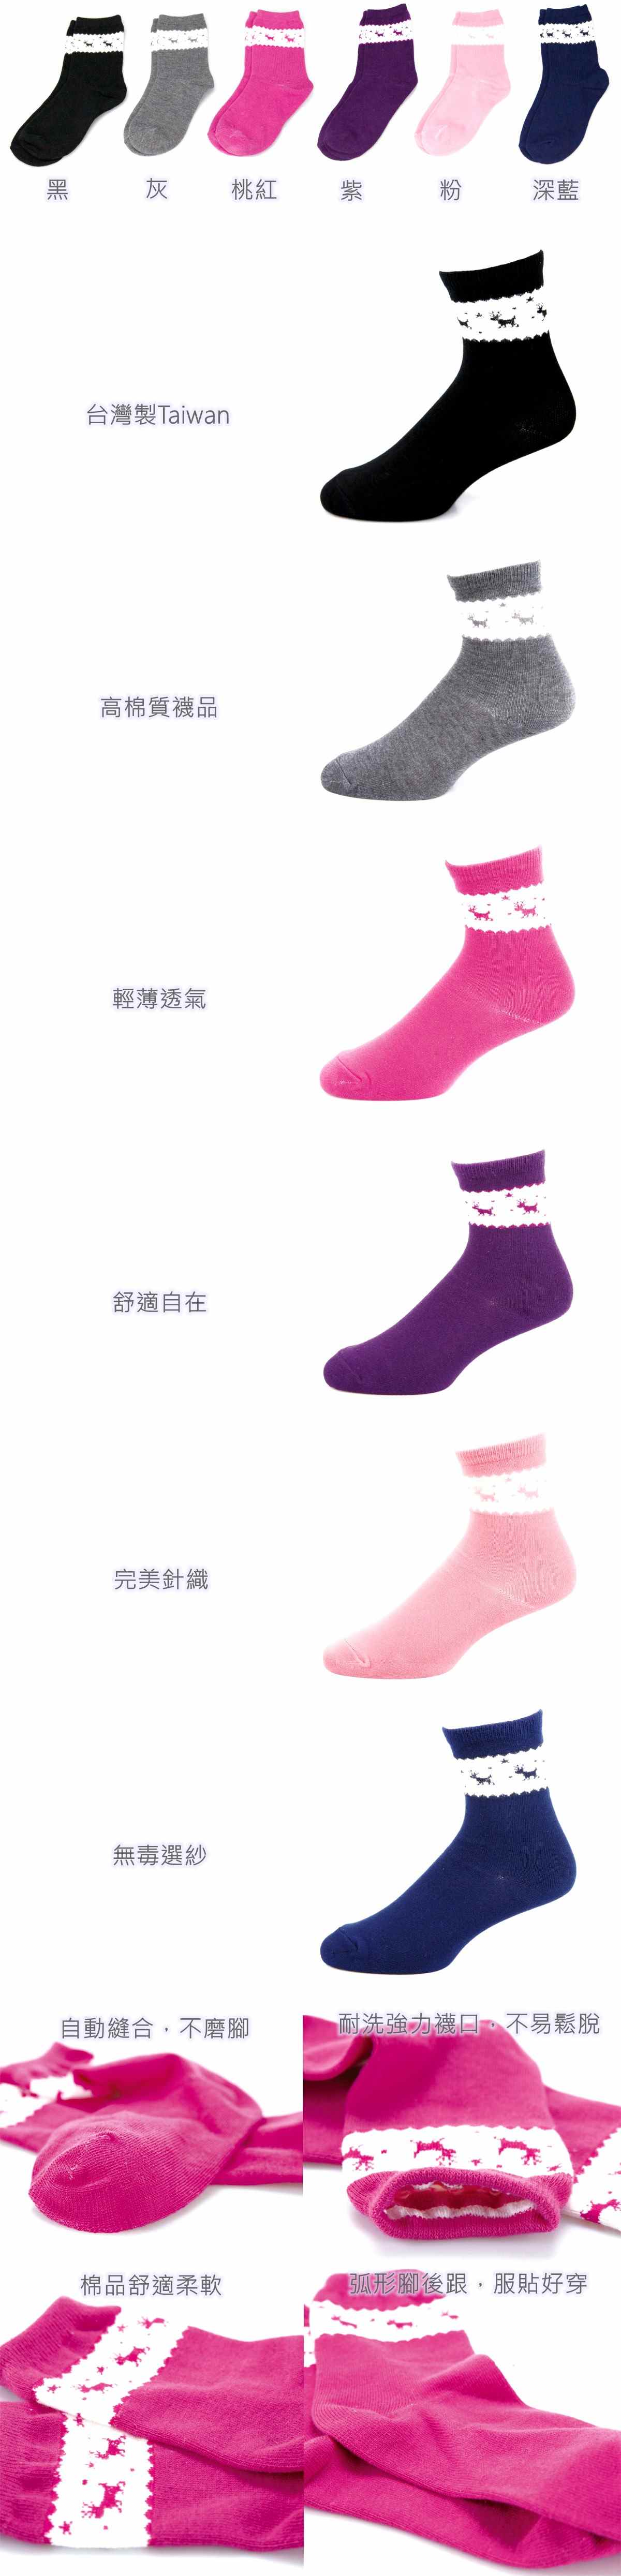 麋鹿造型襪(平面)